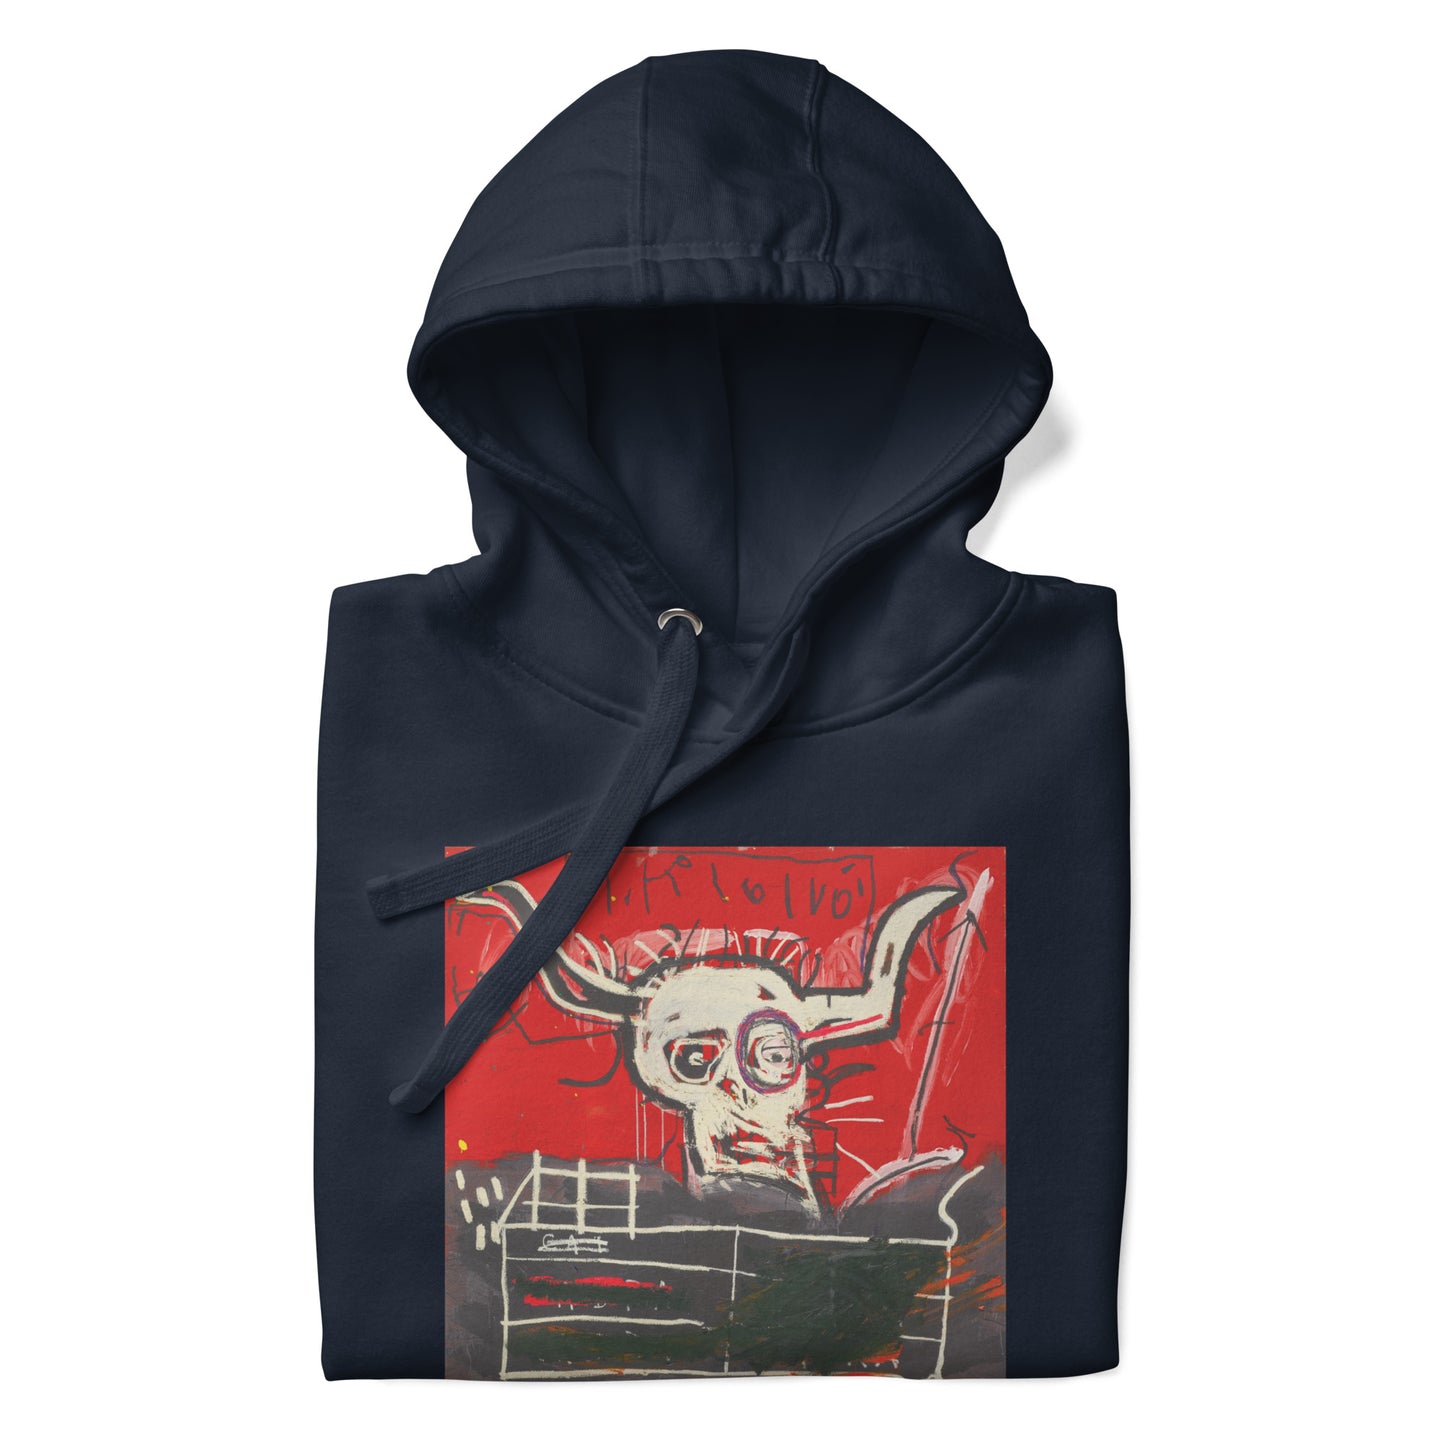 Jean-Michel Basquiat "Cabra" Artwork Printed Premium Streetwear Sweatshirt Hoodie Navy Blue